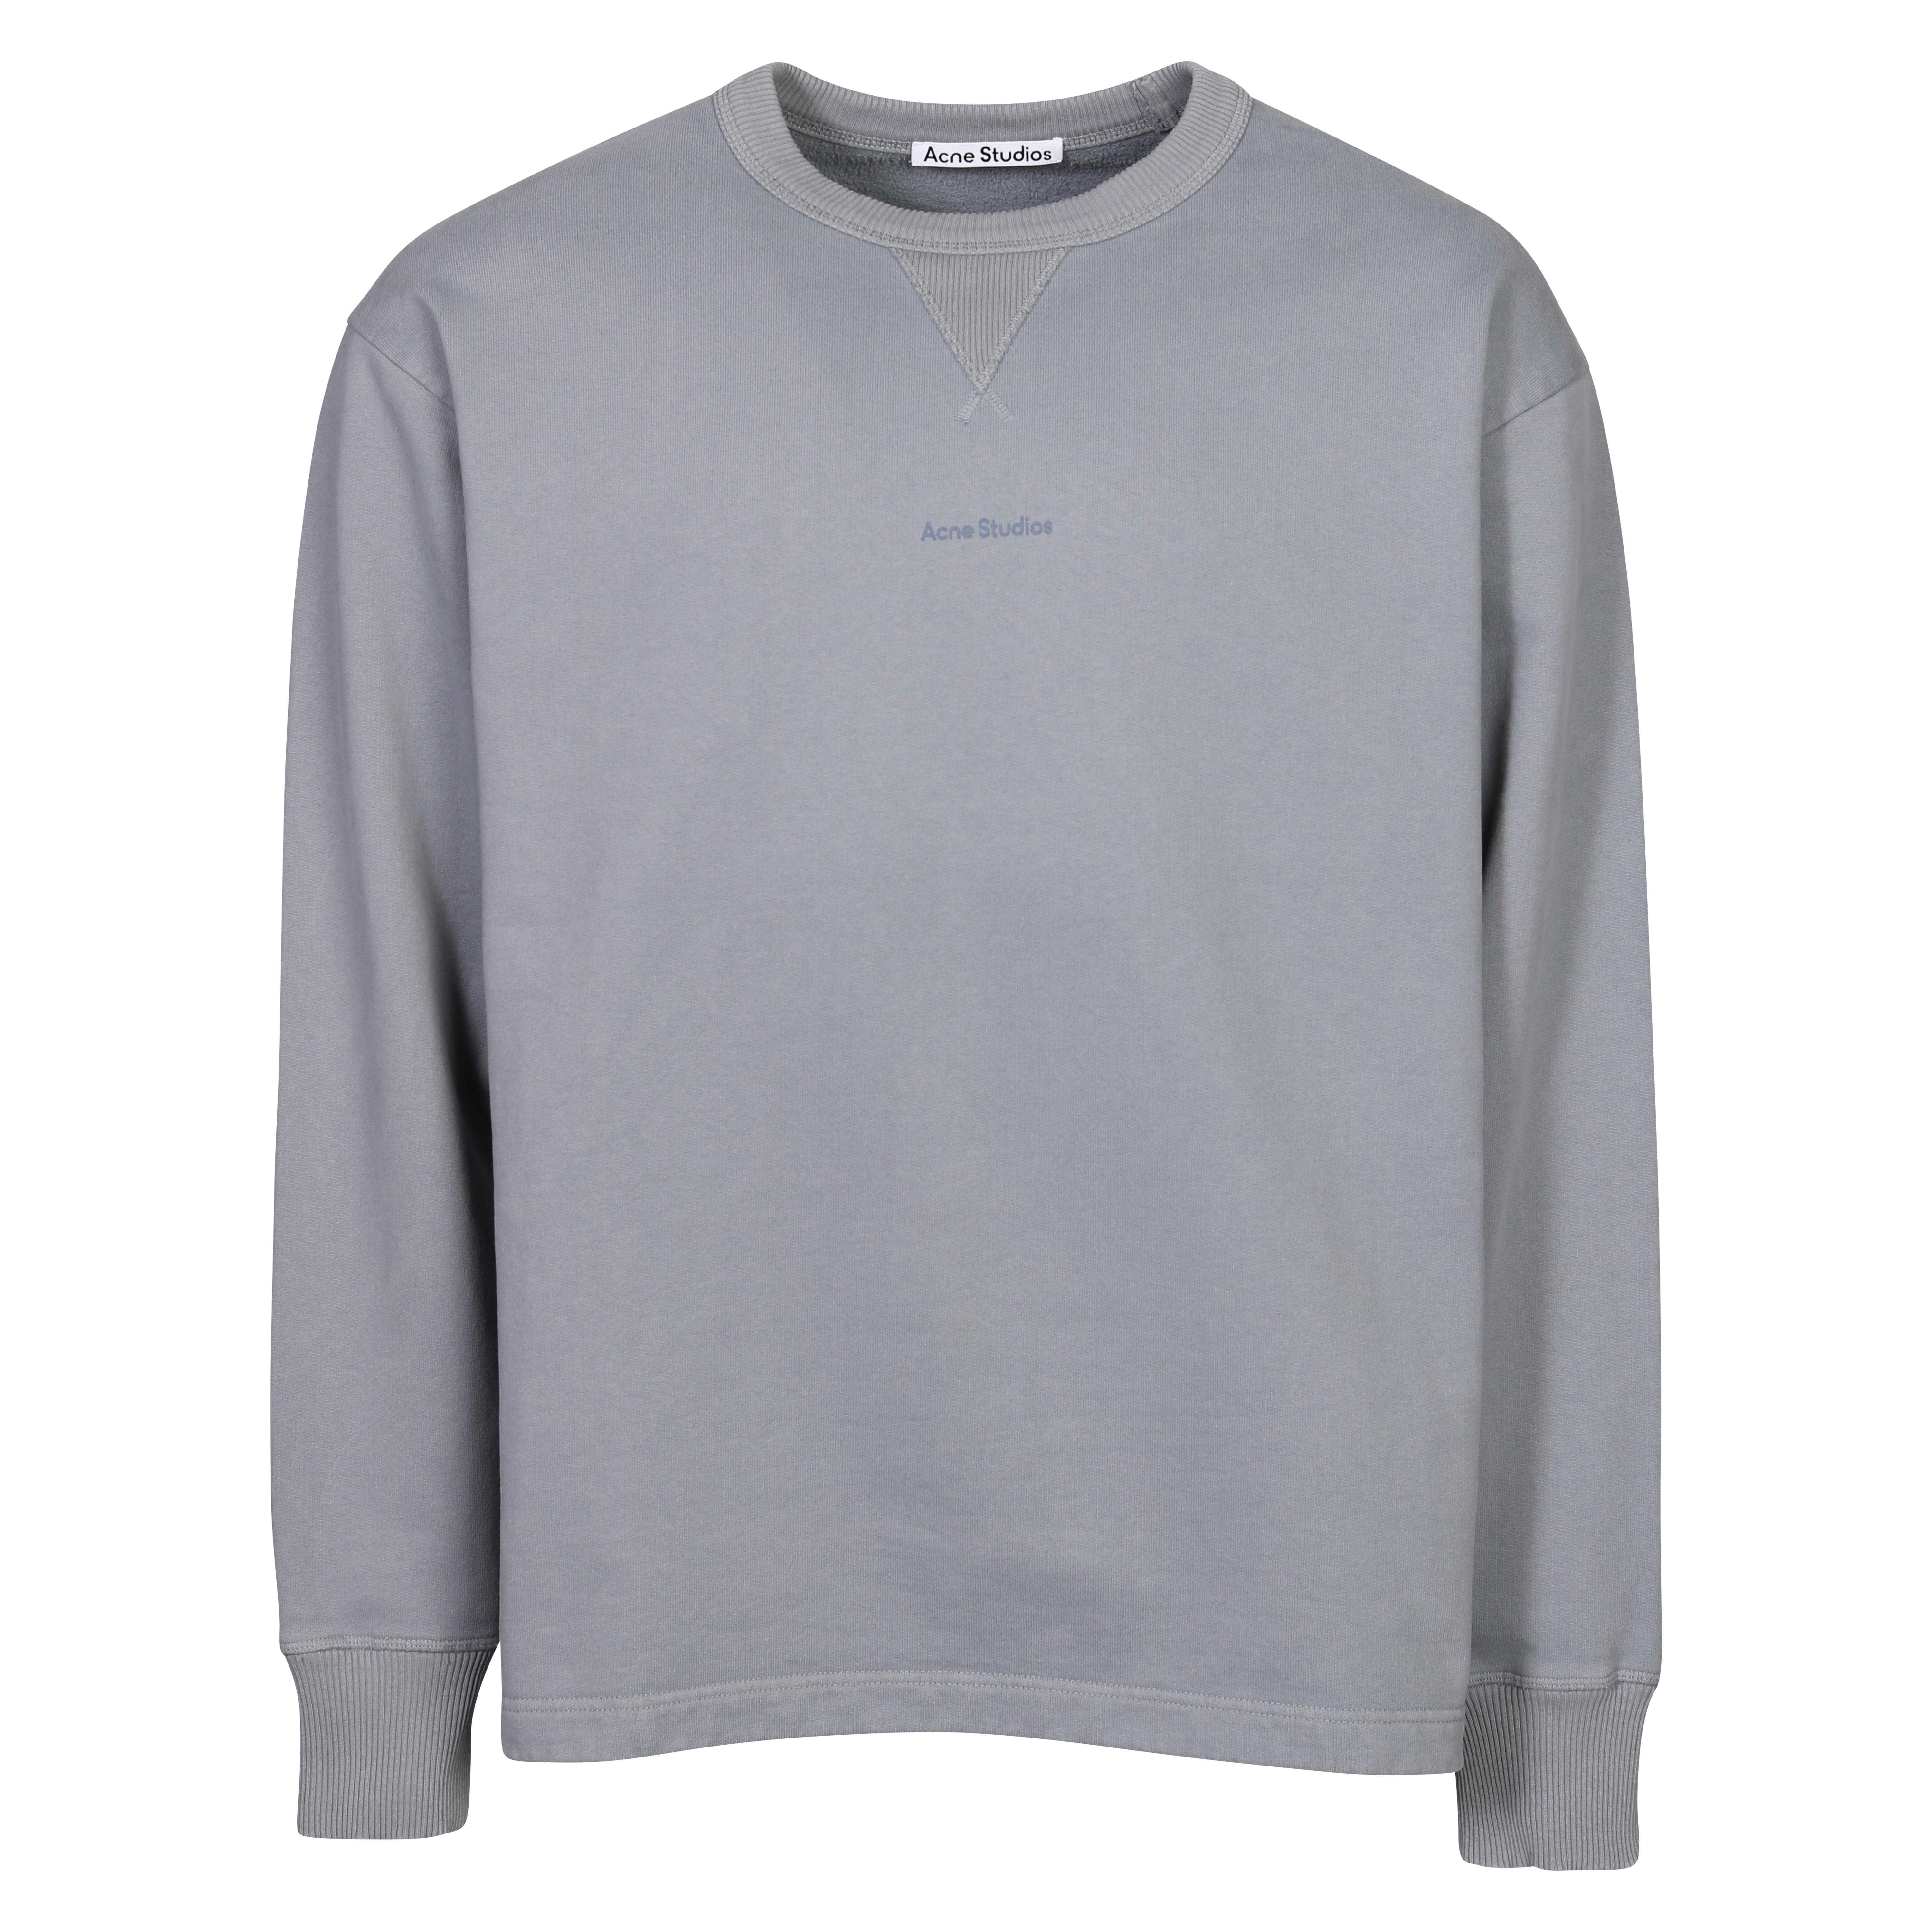 Acne Studios Stamp Sweatshirt in Steel Grey S